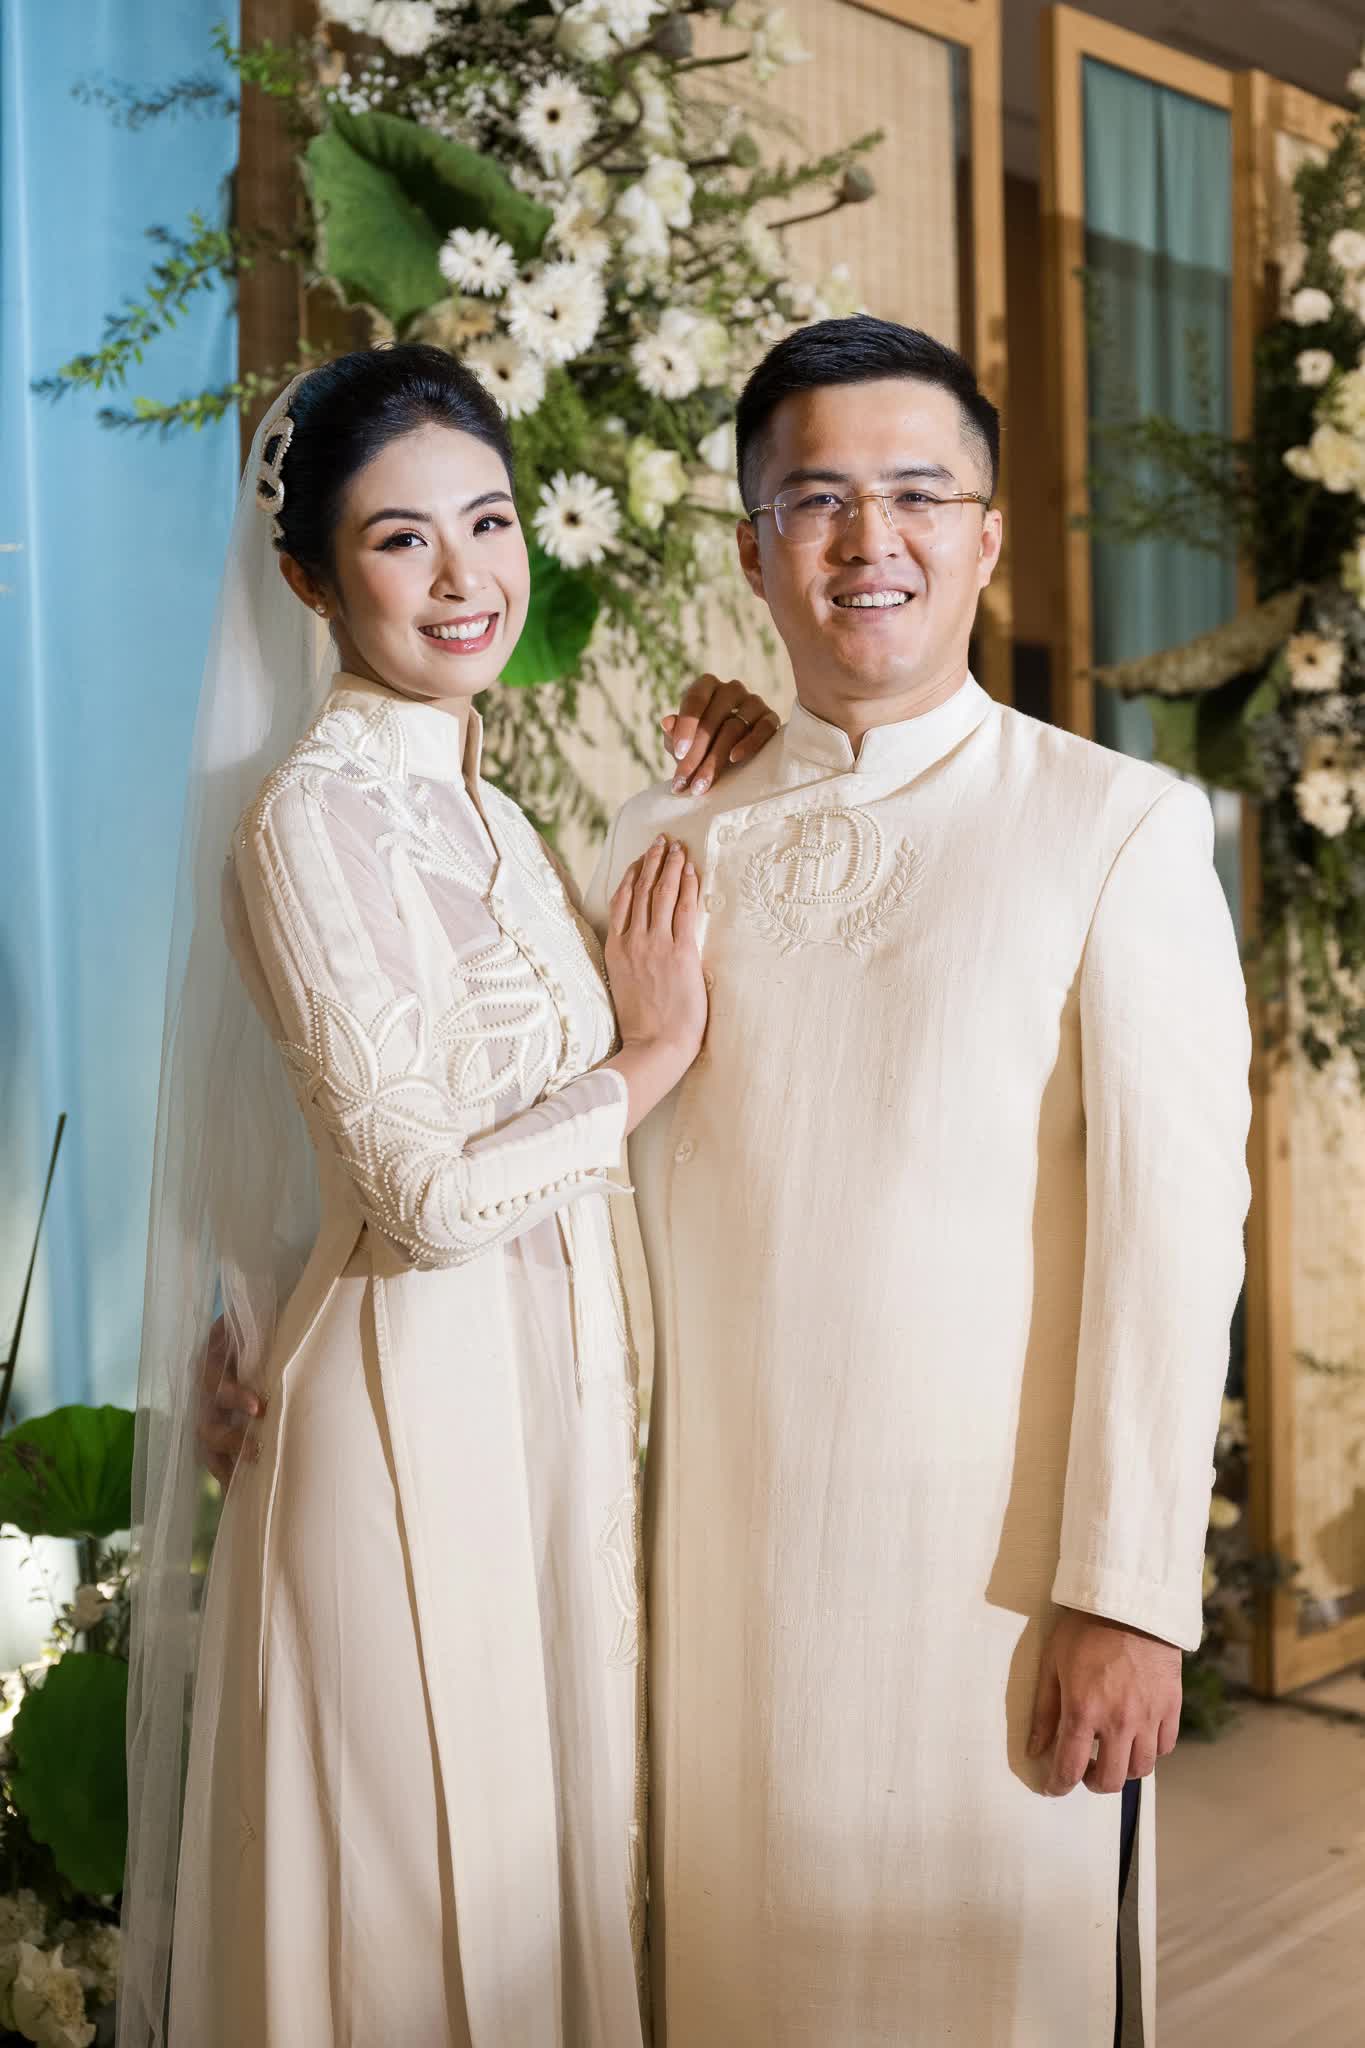 Hoa hậu Ngọc Hân xuất hiện xinh đẹp và nổi bật bên chú rể trong tà áo dài tại hôn lễ afamily